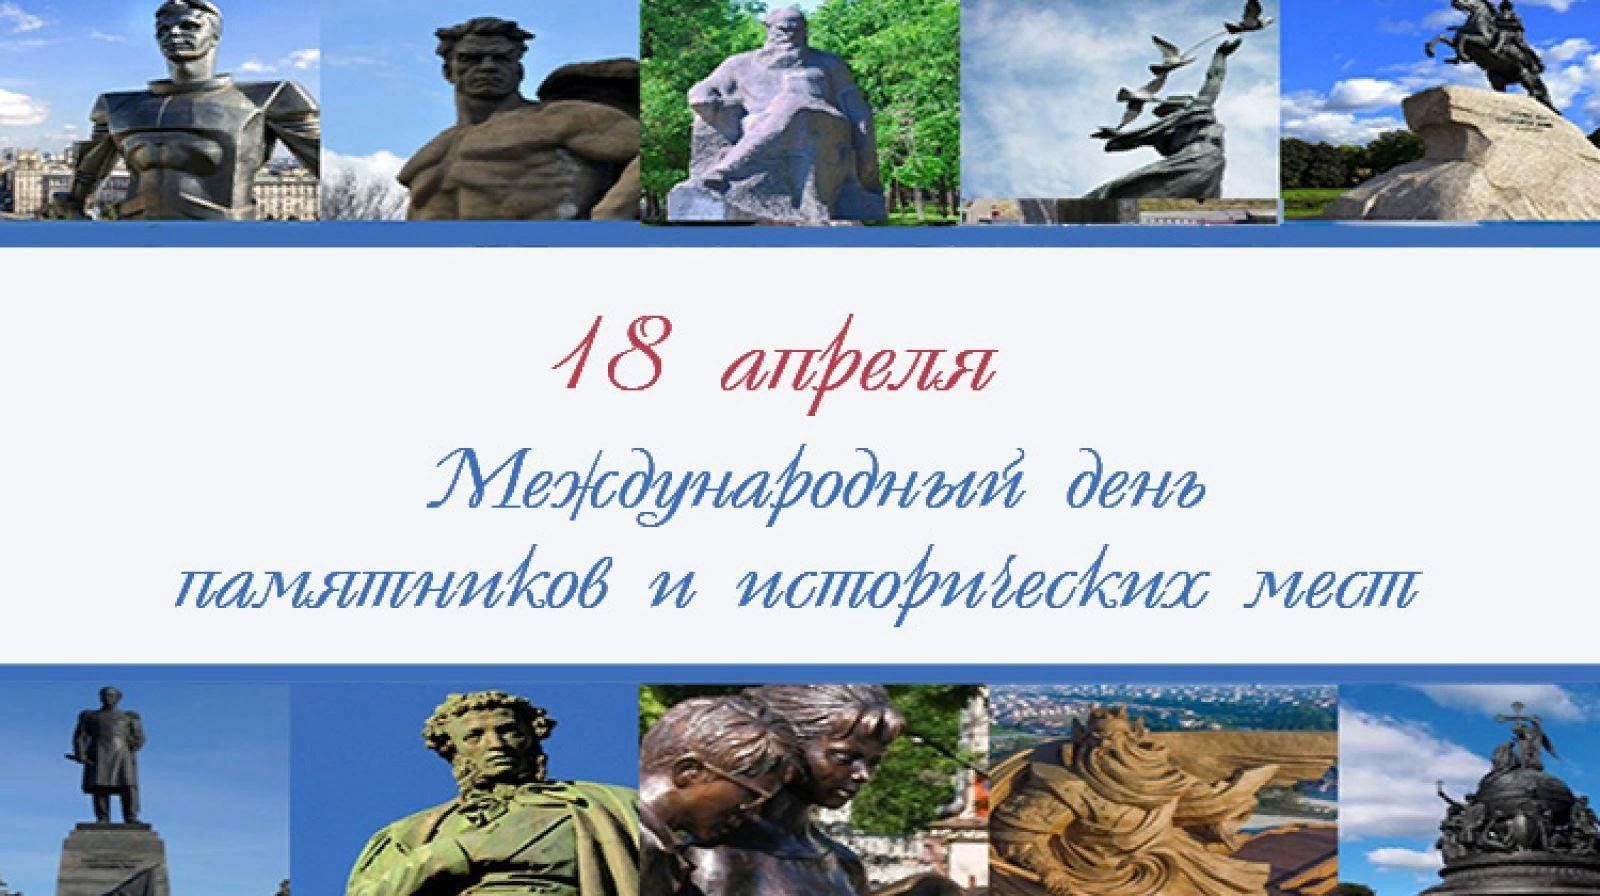 Международный день охраны памятников и достопримечательных мест